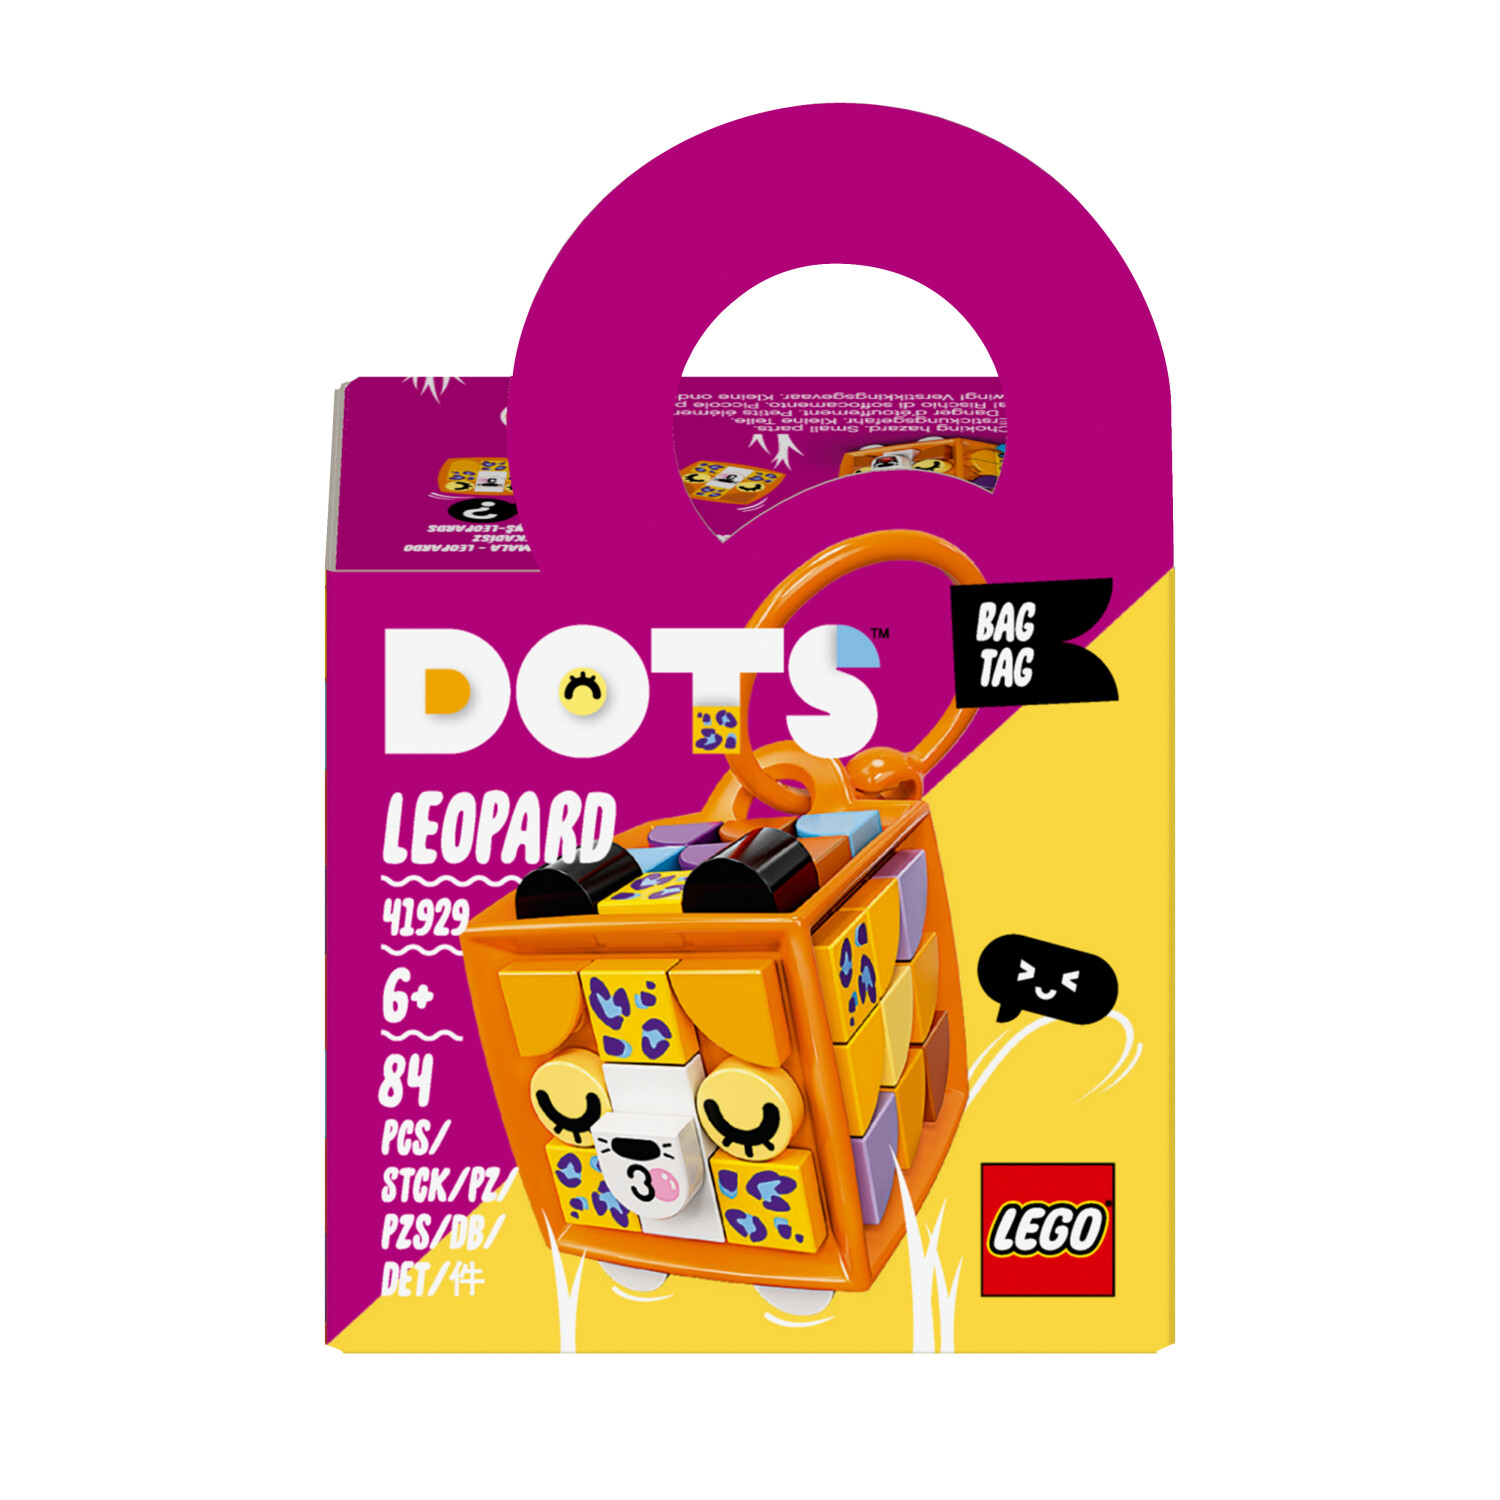 | (41929) € ab 6,99 Preisvergleich - Dots Leopard Taschenanhänger LEGO bei